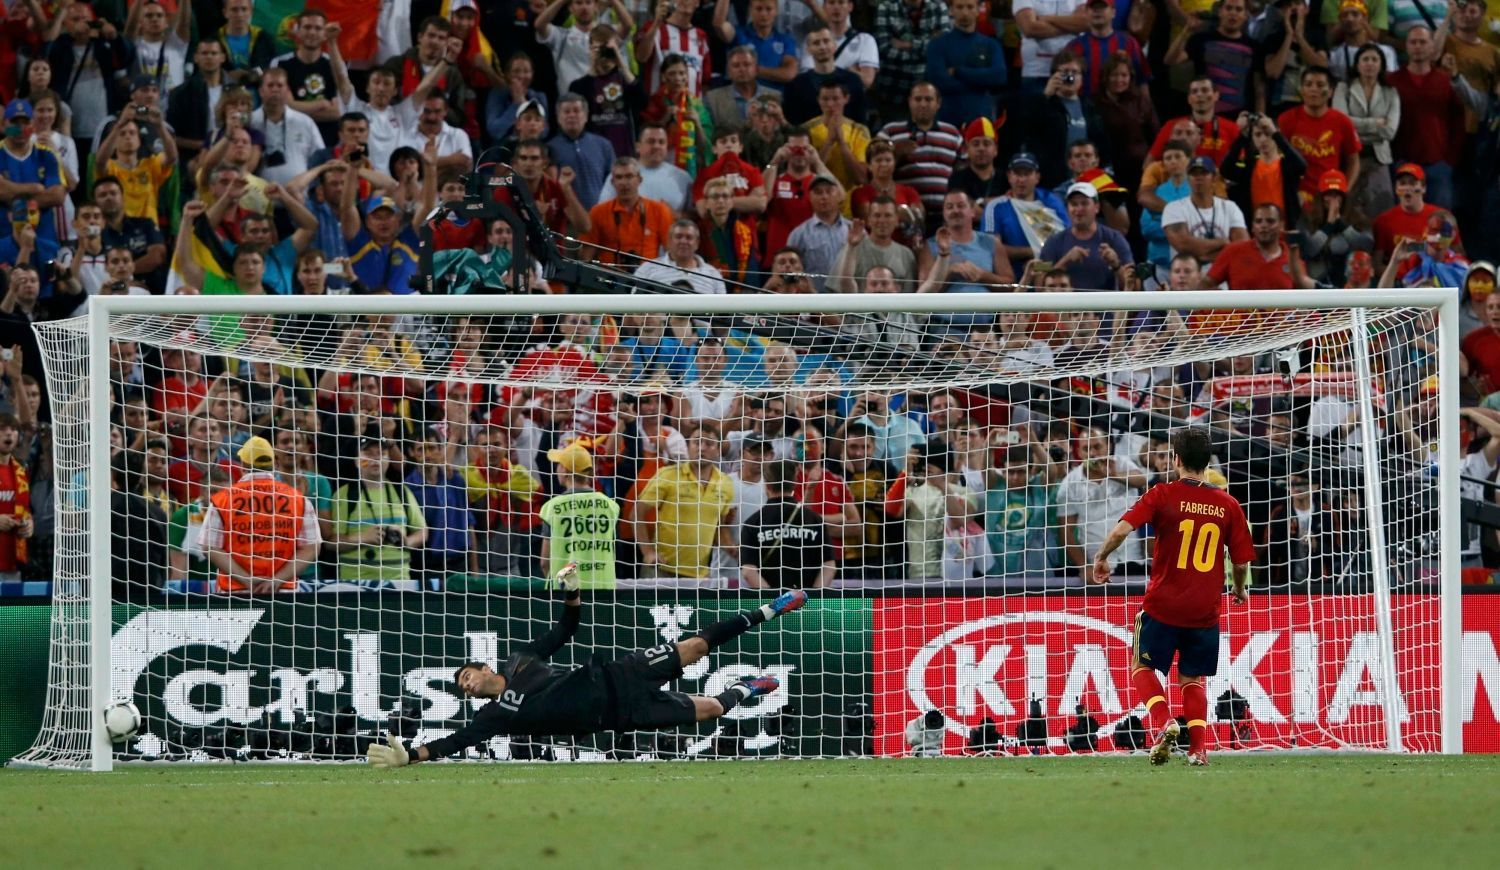 Cesc Fábregas se štěstím proměňuje rozhodující penaltu během semifinálového utkání Eura 2012 mezi Portugalskem a Španělskem.